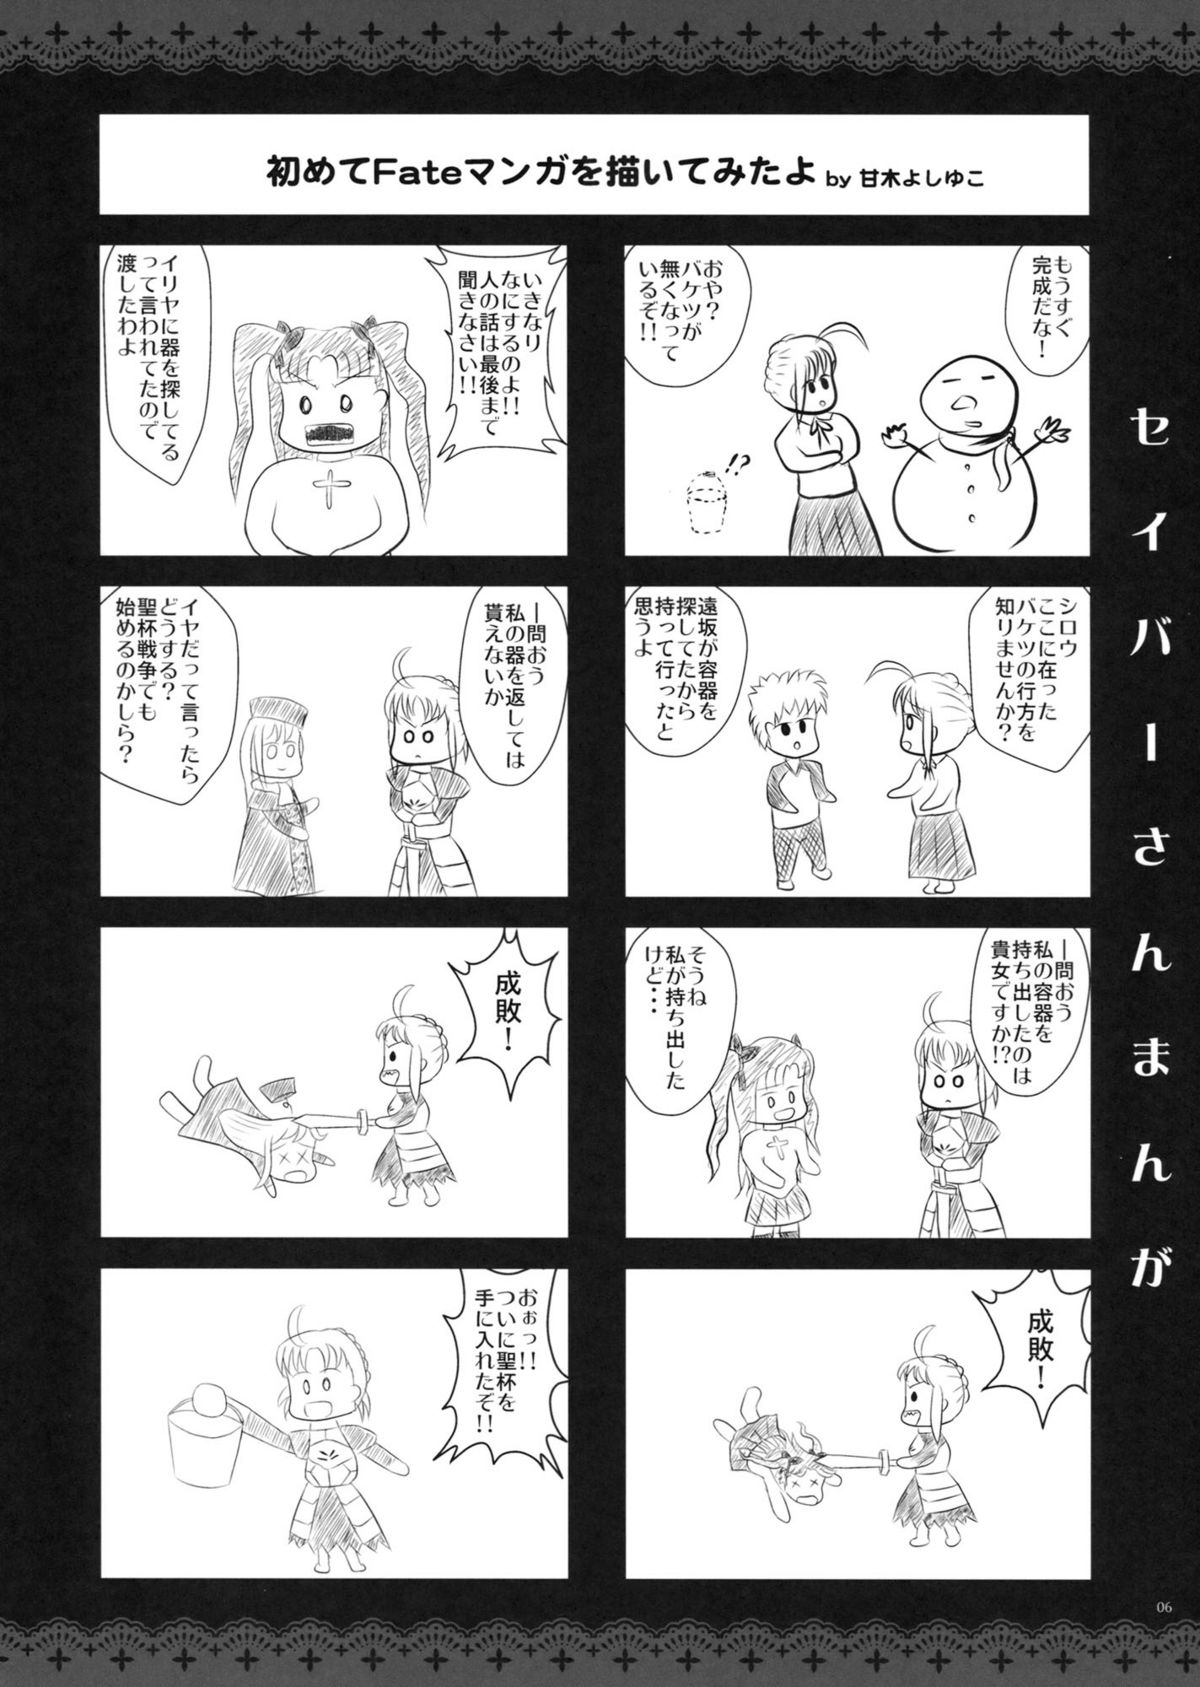 [アレマテオレマ (小林由高)] GARIGARI 41 (Fate/stay night) [第2刷 2012年03月25日]